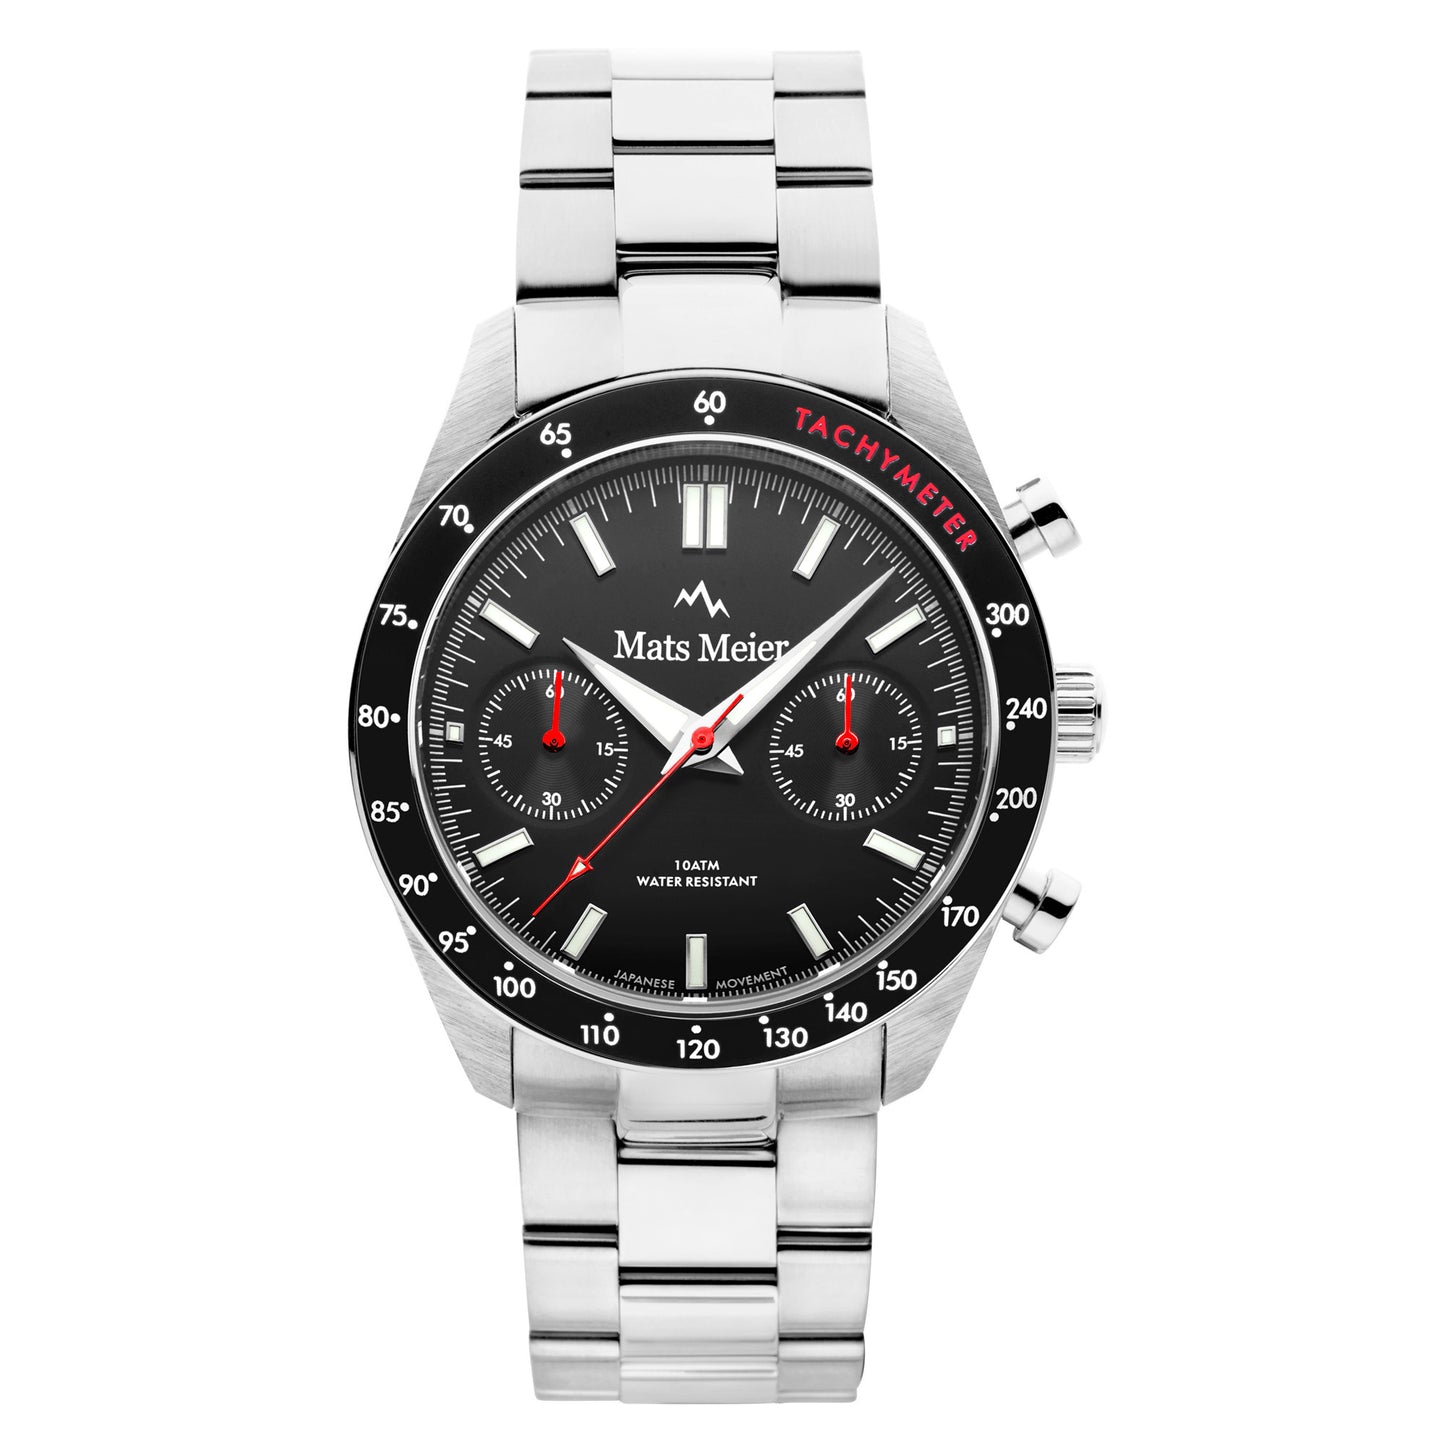 Arosa Racing cronografo orologio da uomo color argento e nero